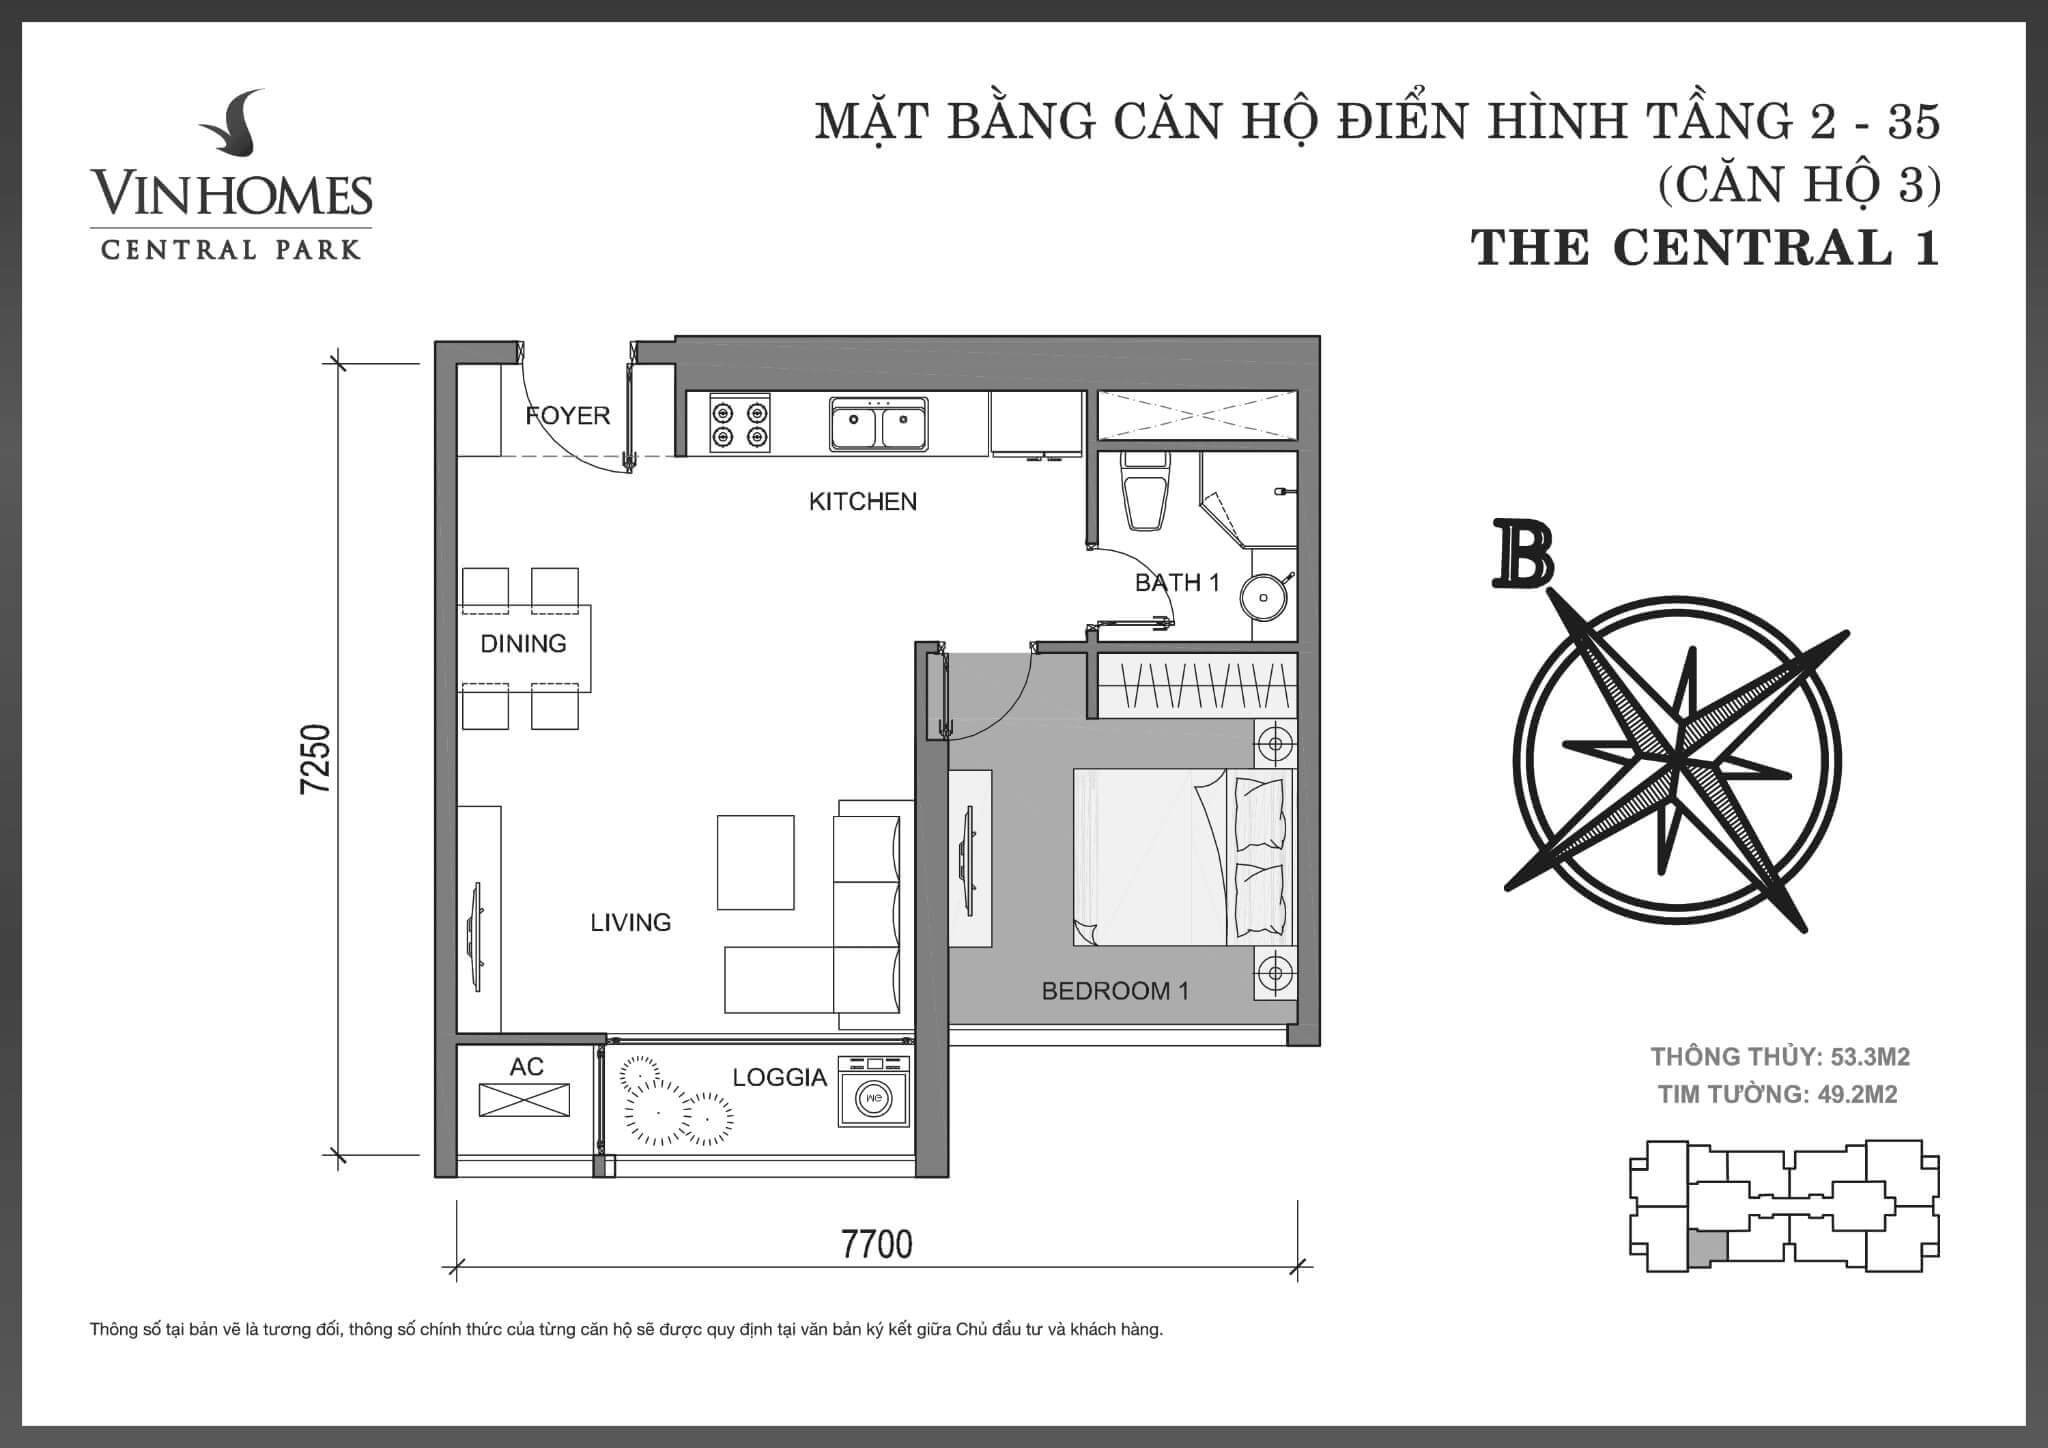 layout căn hộ số 3 tòa Central 1